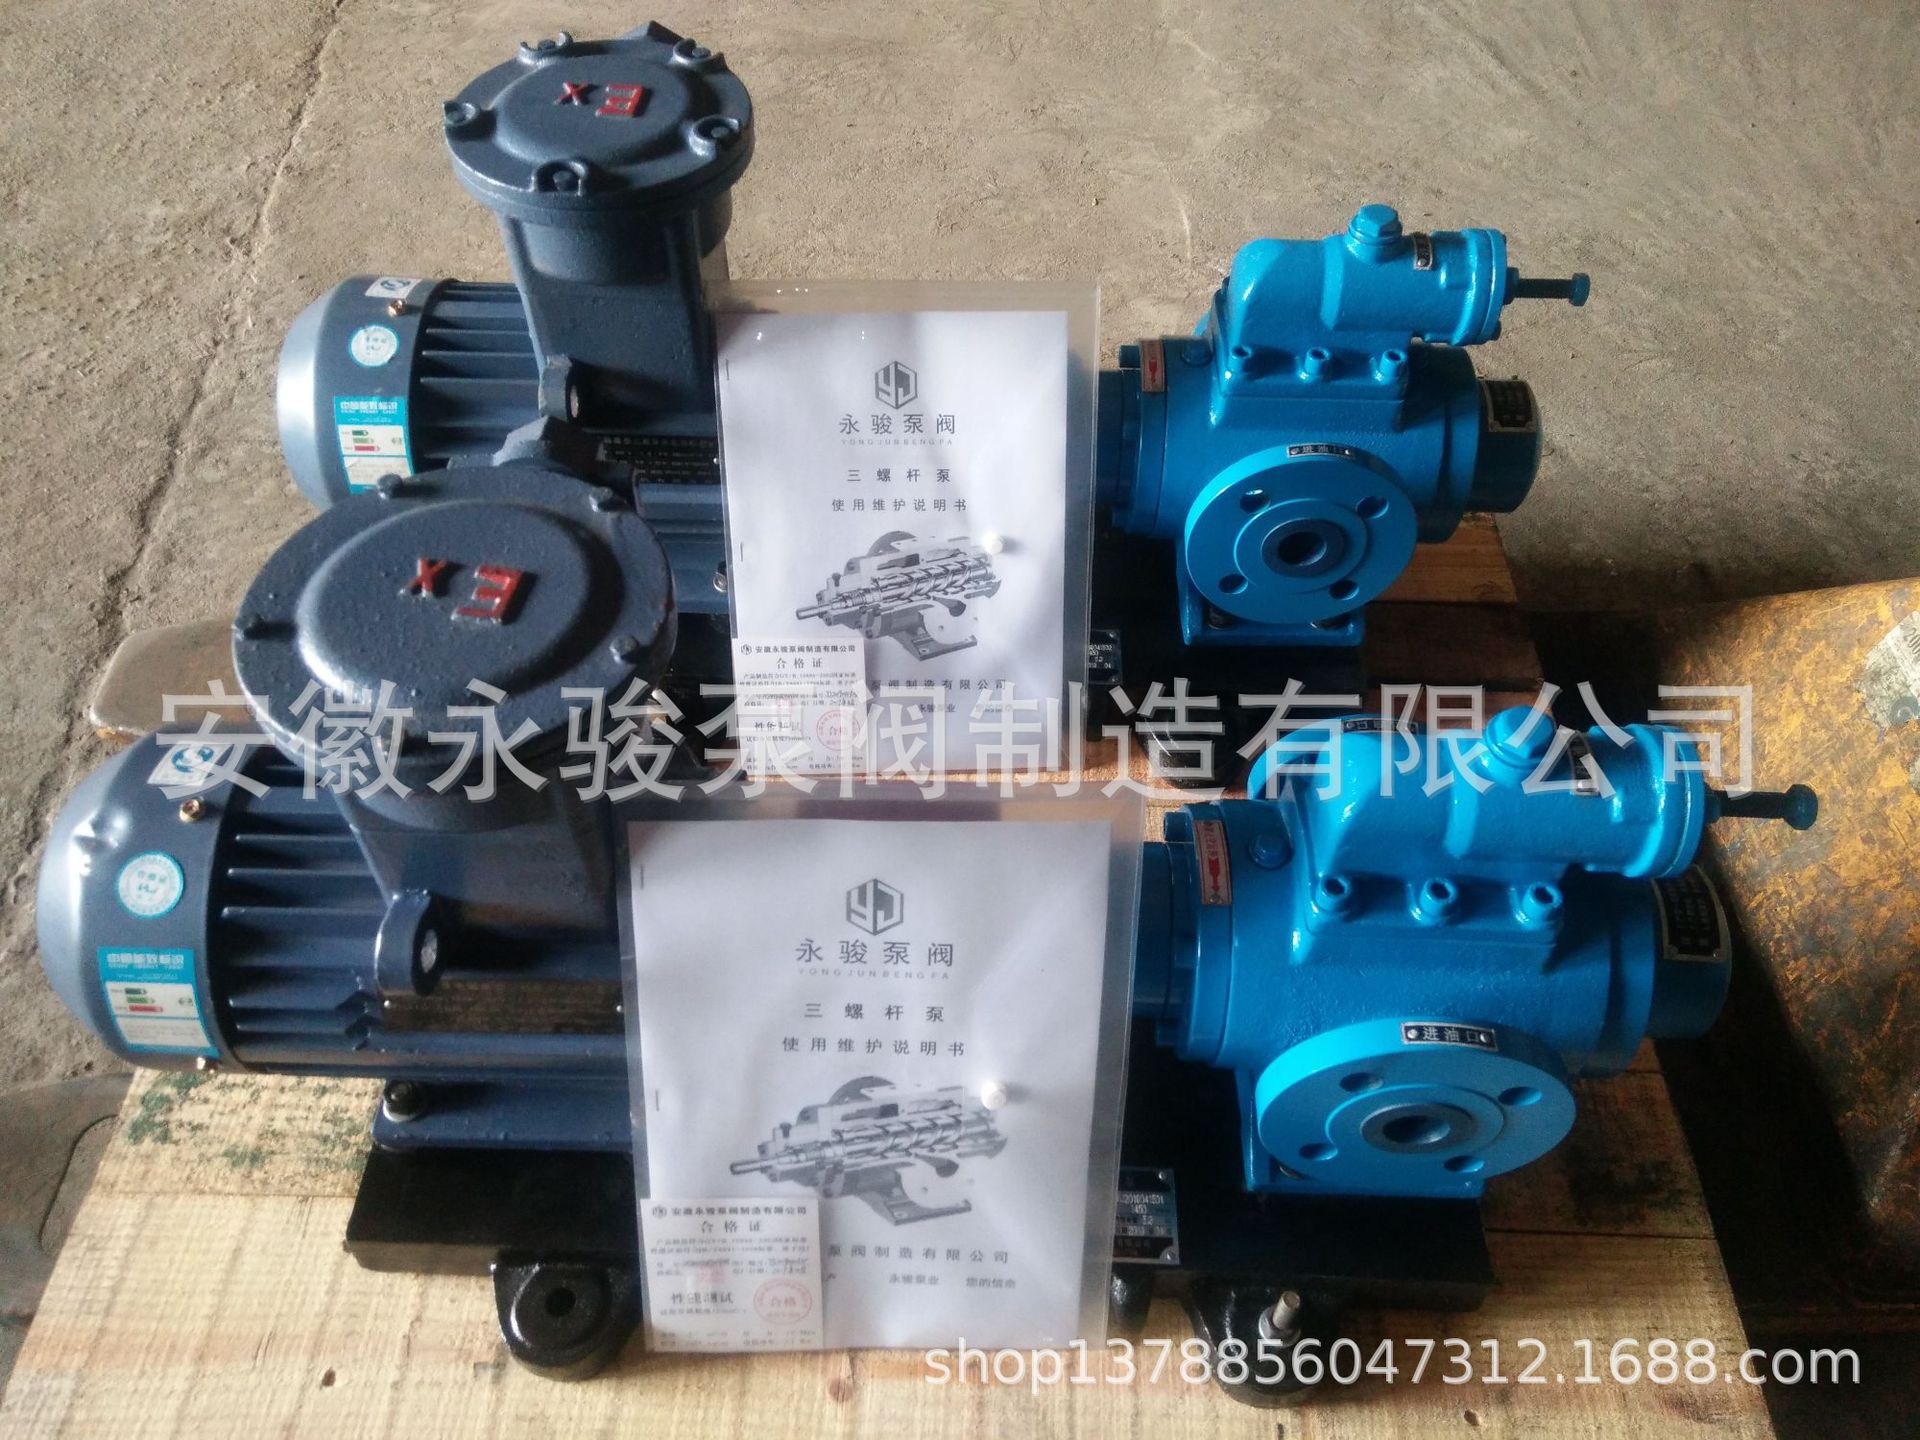 黄山螺杆泵 3G32-46 三螺杆泵 钢铁厂润滑设备低压油泵 安徽永骏